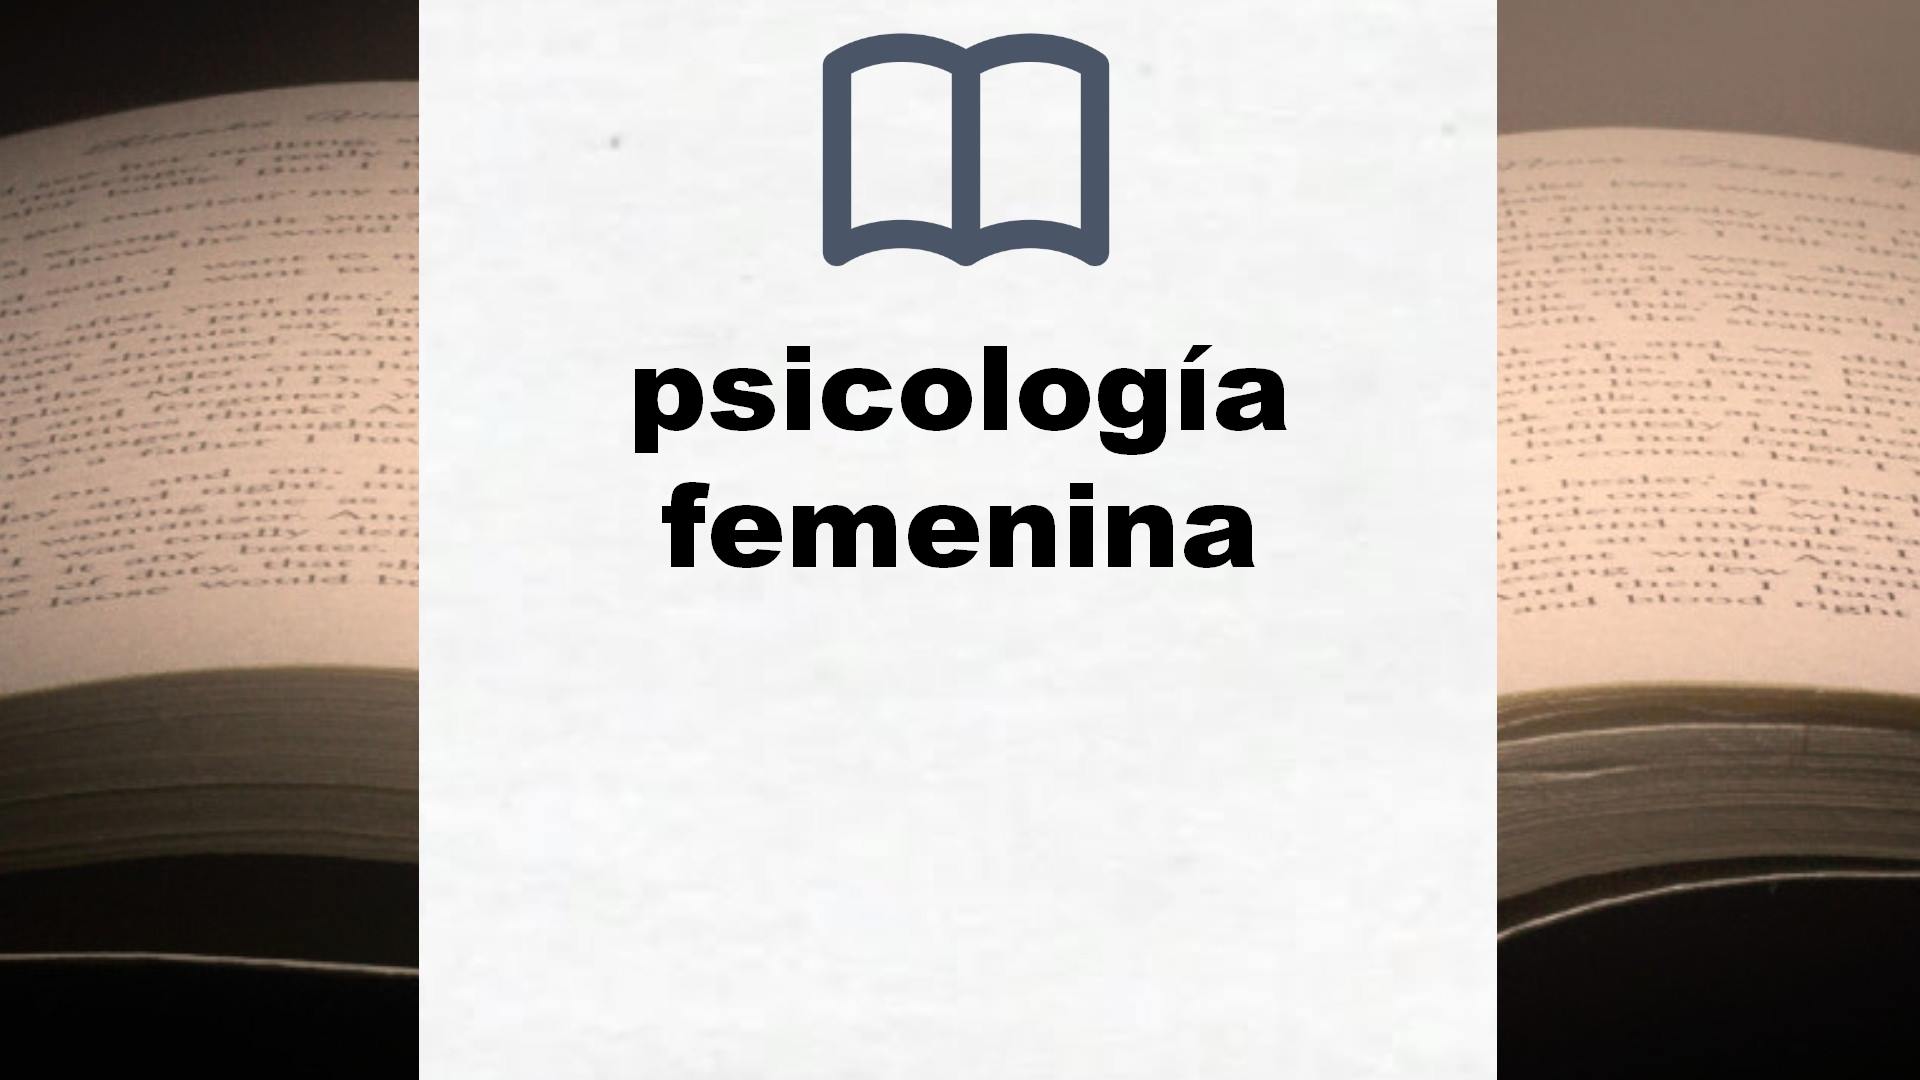 Libros sobre psicología femenina